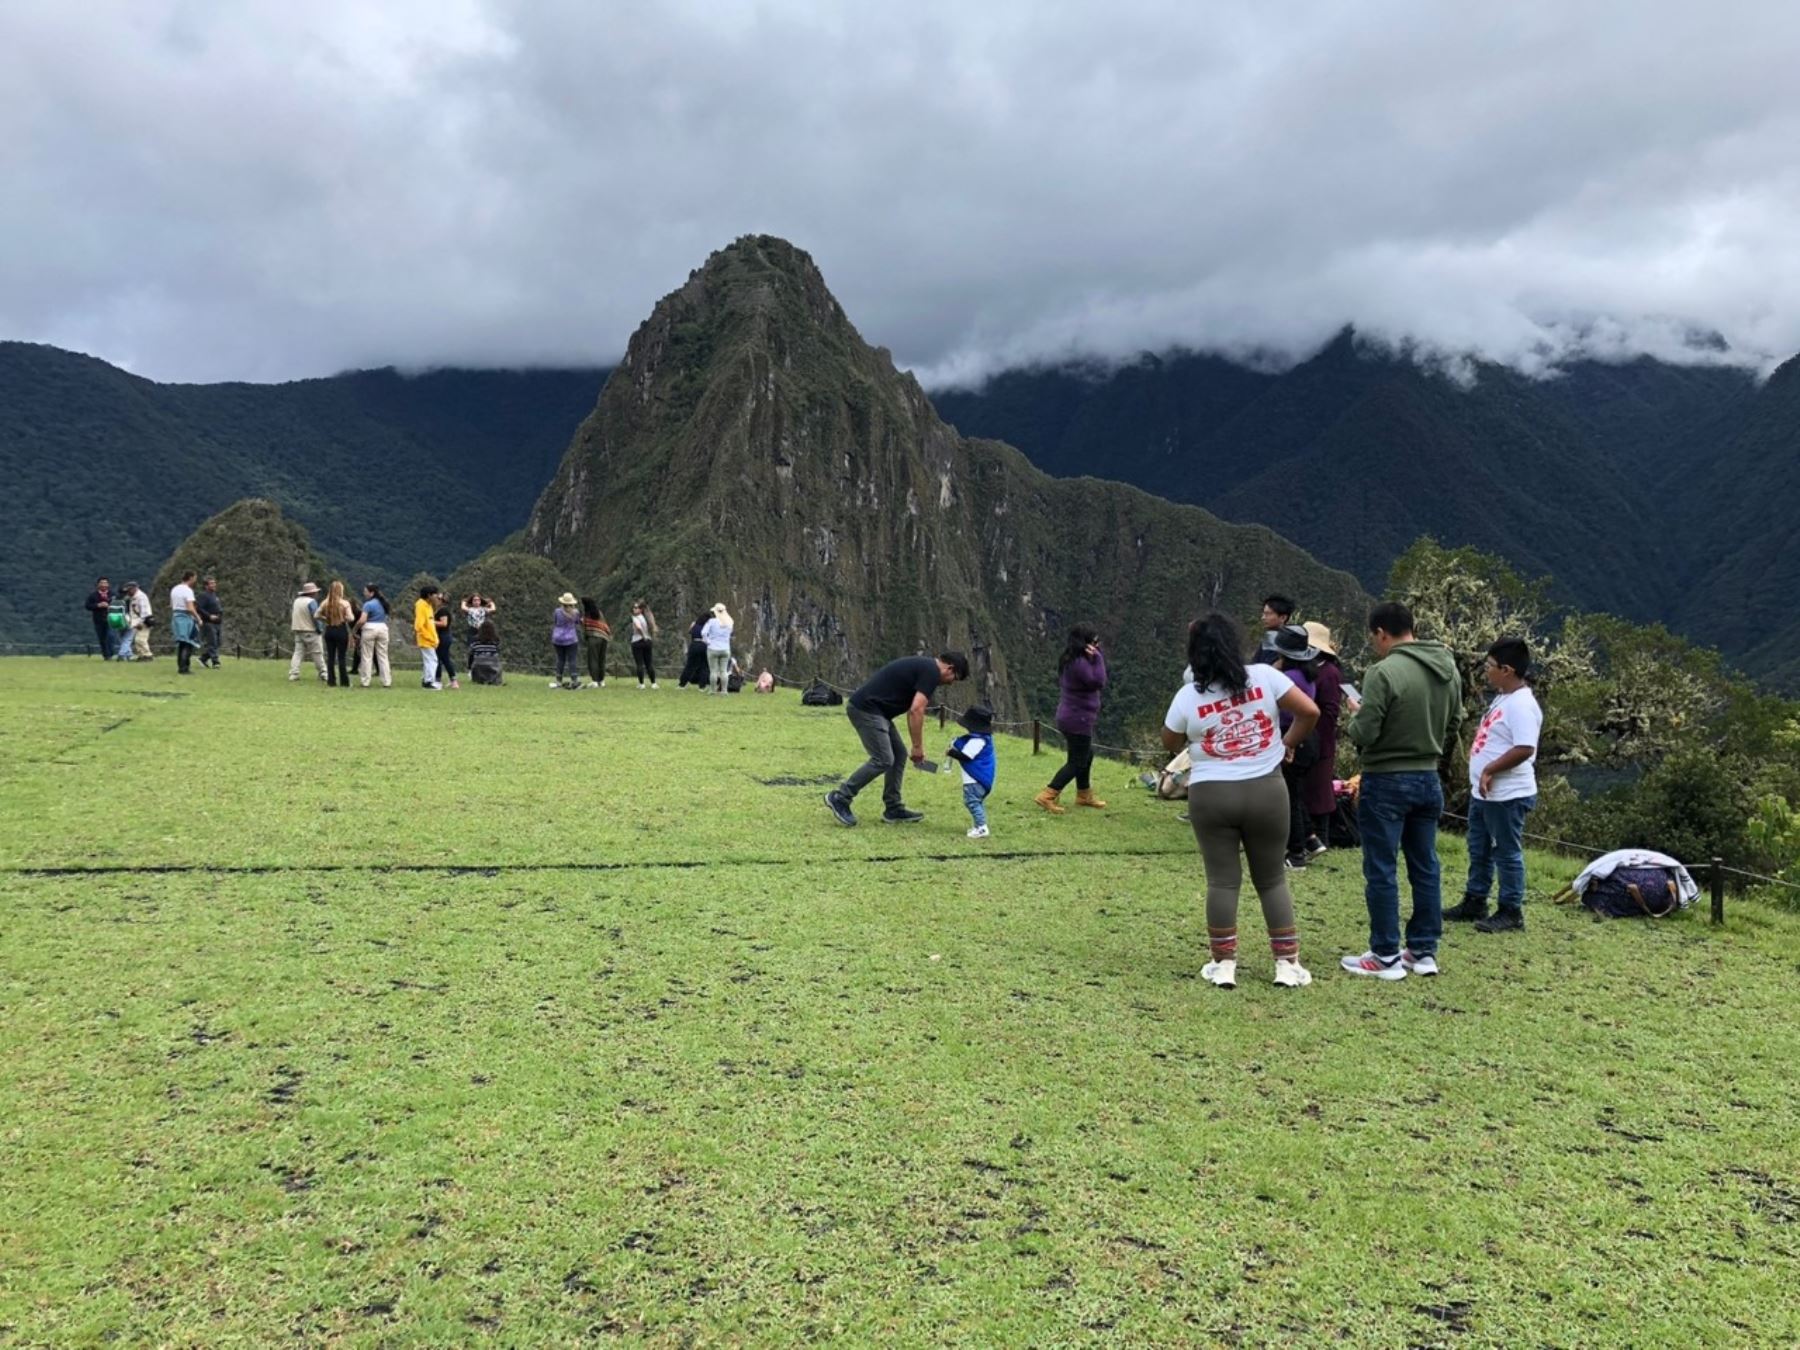 Poco a poco Machu Picchu comienza a recobrar su brillo y empieza a recibir más turistas tras su reapertura el 15 de febrero. En las dos primeras semanas recibió cerca de 12,000 visitantes. Foto: ANDINA/difusión.